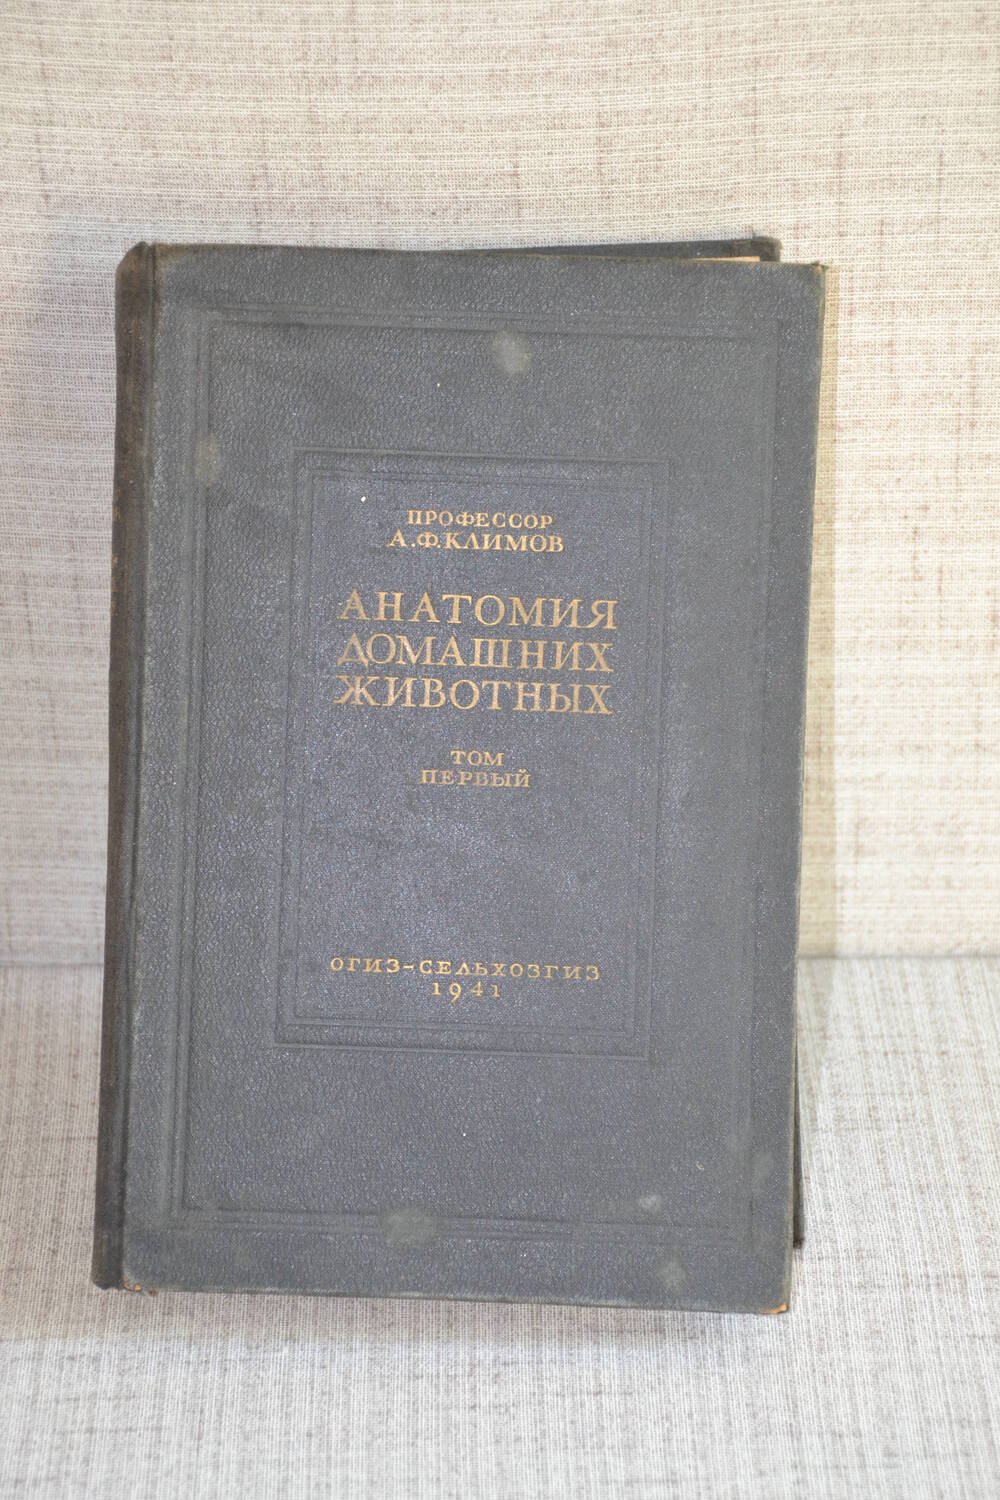 Книга А.Ф.Климова «Анатомия домашних животных».